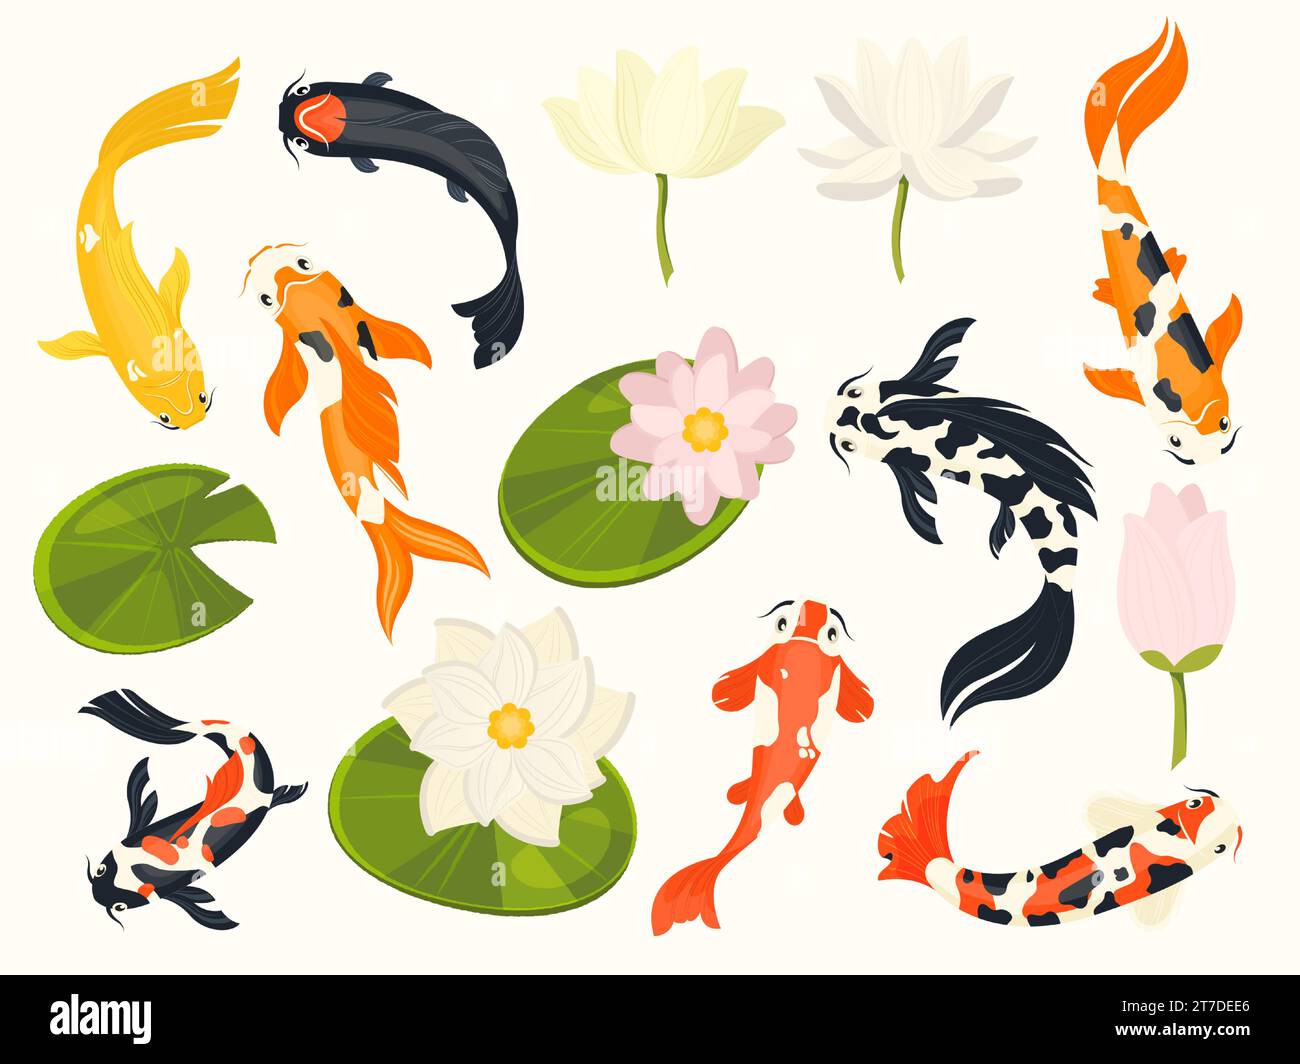 Pesce Koi e loto. Esotici animali acquatici asiatici che nuotano nel laghetto dei fiori di loto, tradizionali simboli buddisti cinesi. Insieme isolato dal vettore Illustrazione Vettoriale